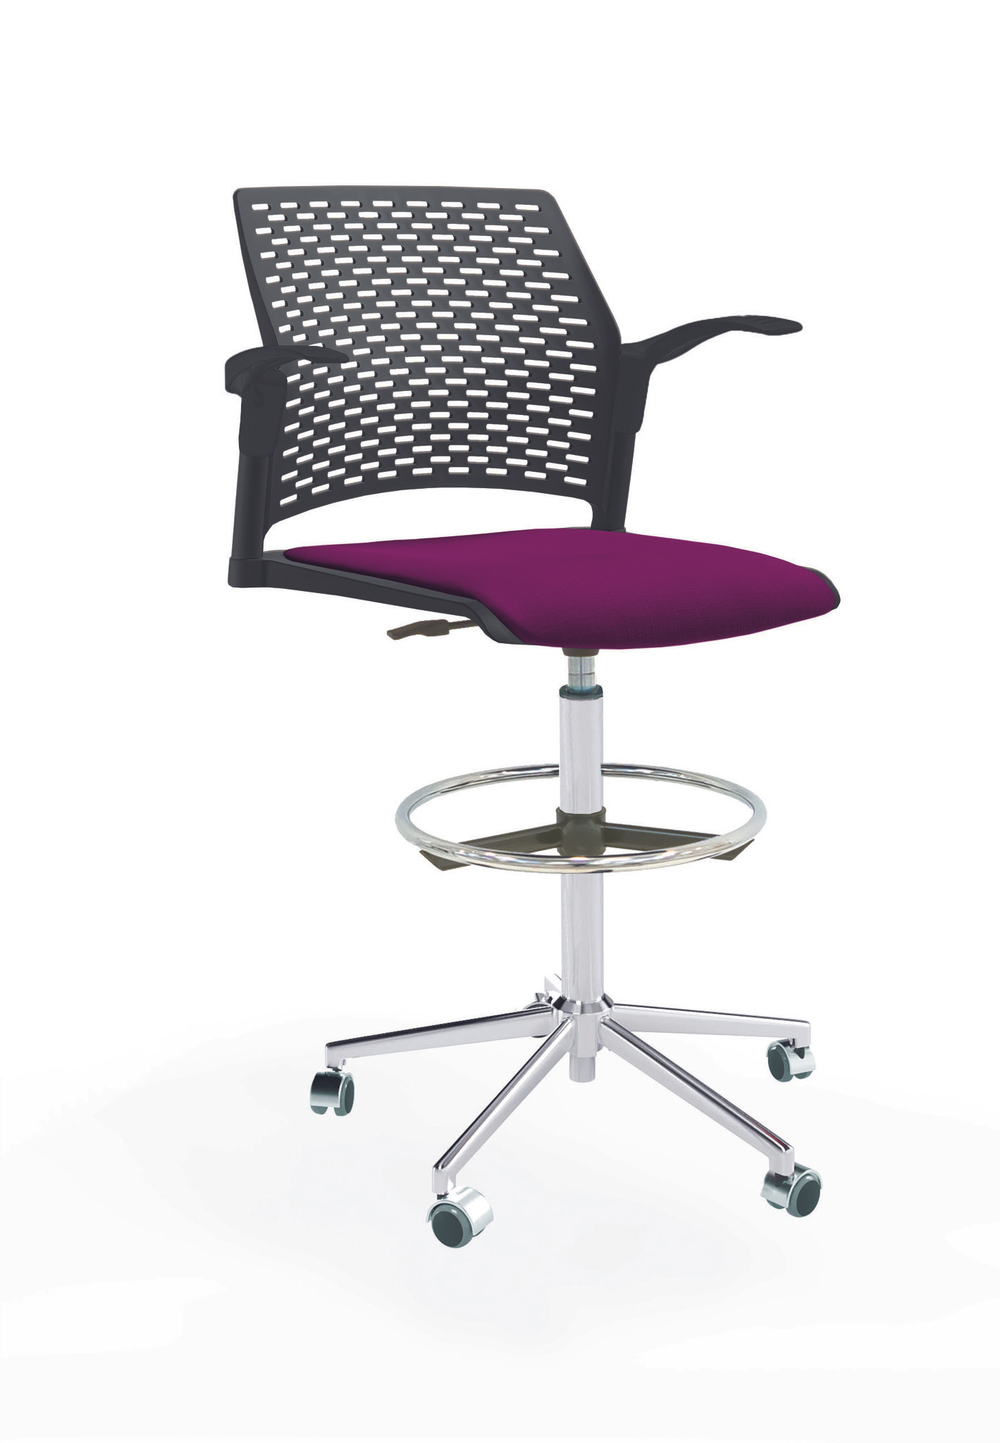 Кресло Rewind каркас хром, пластик черный, база стальная хромированная, с открытыми подлокотниками, сиденье фиолетовое